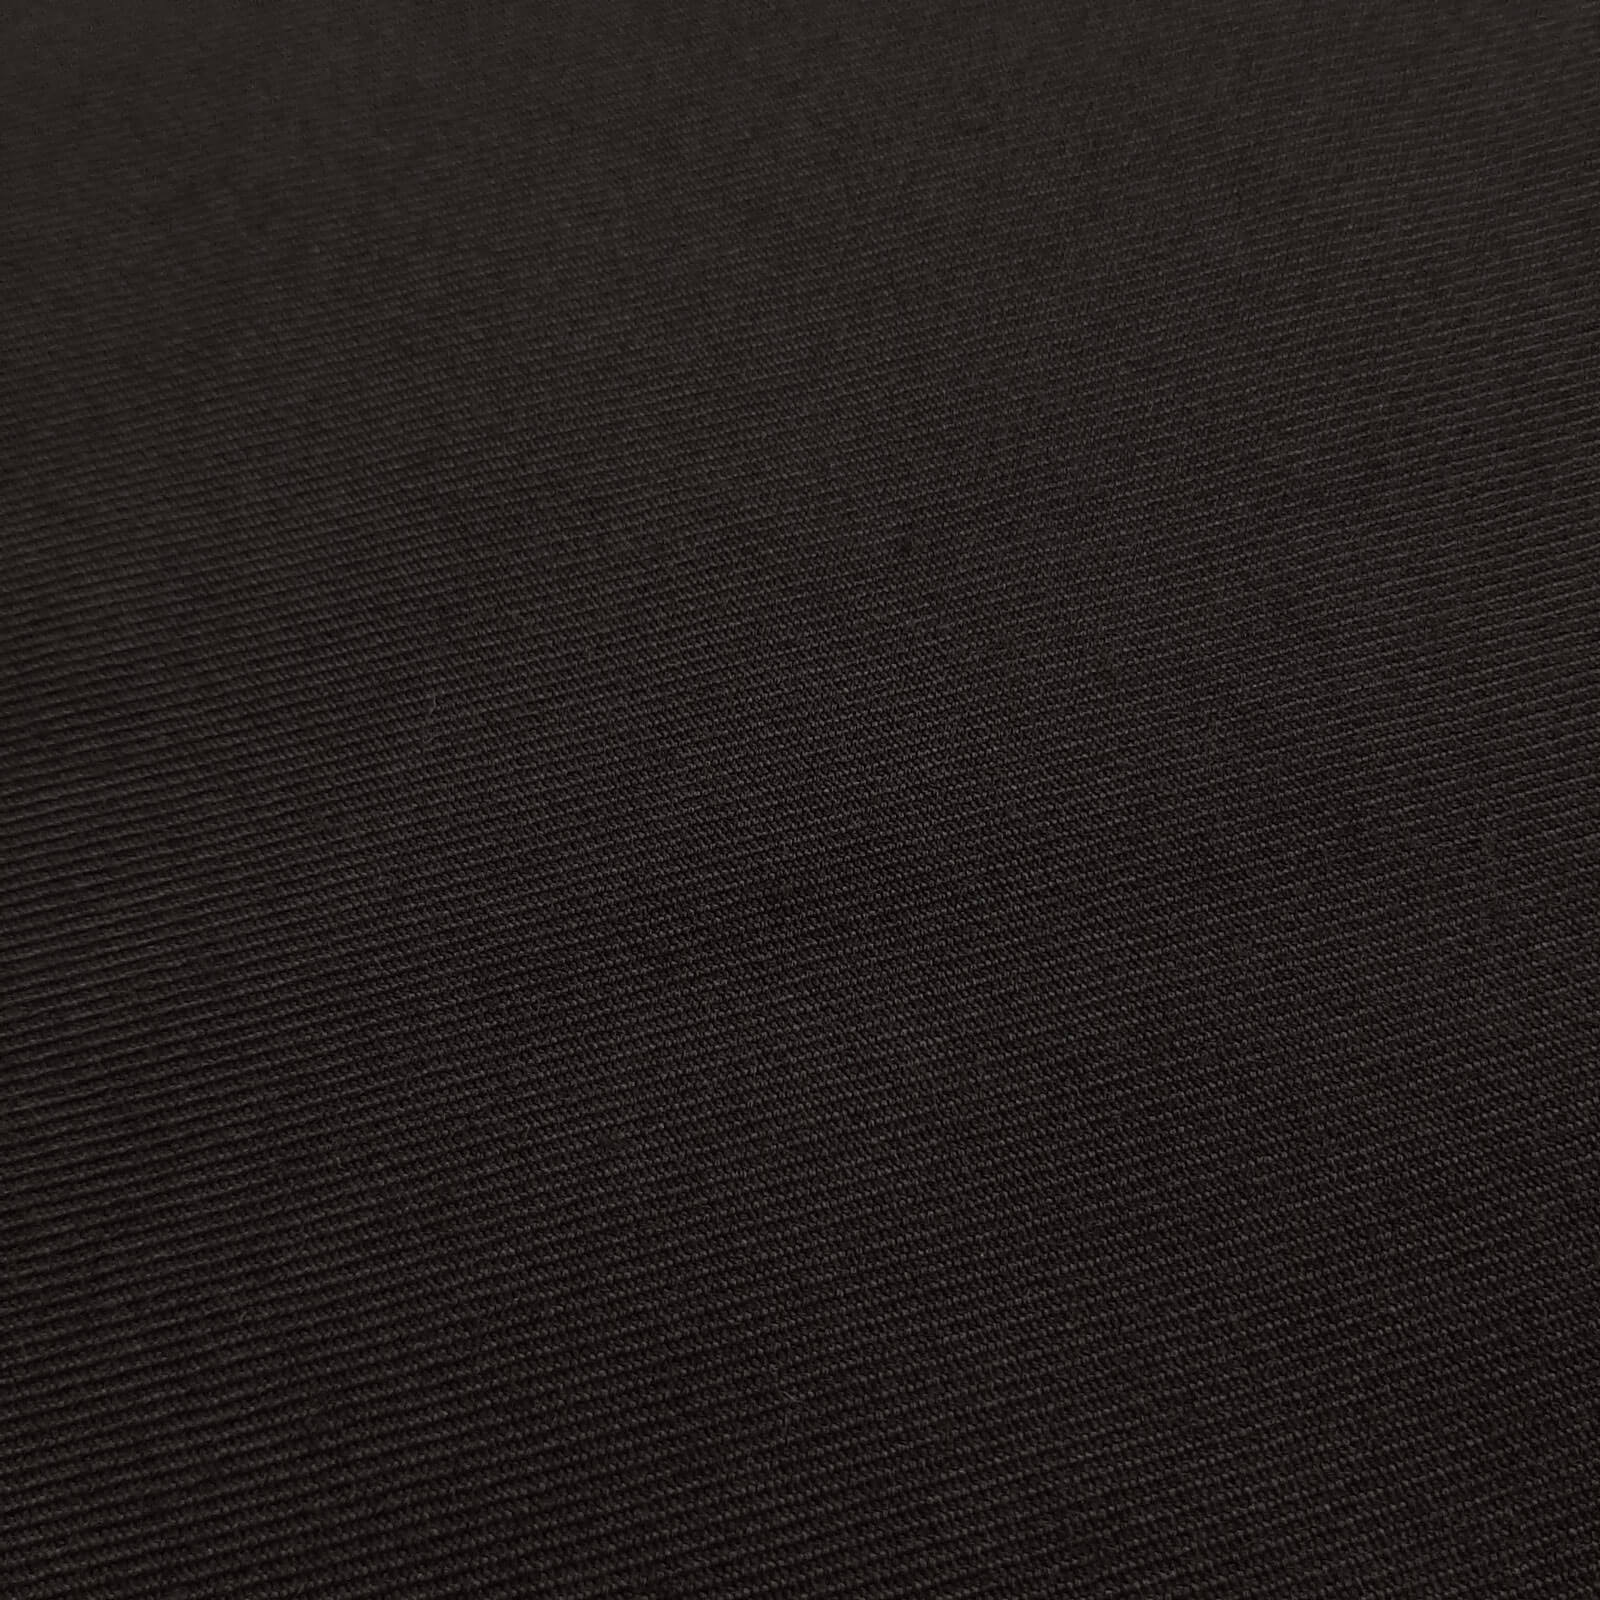 Franziskus - Woolen cloth / Uniform cloth - Black 